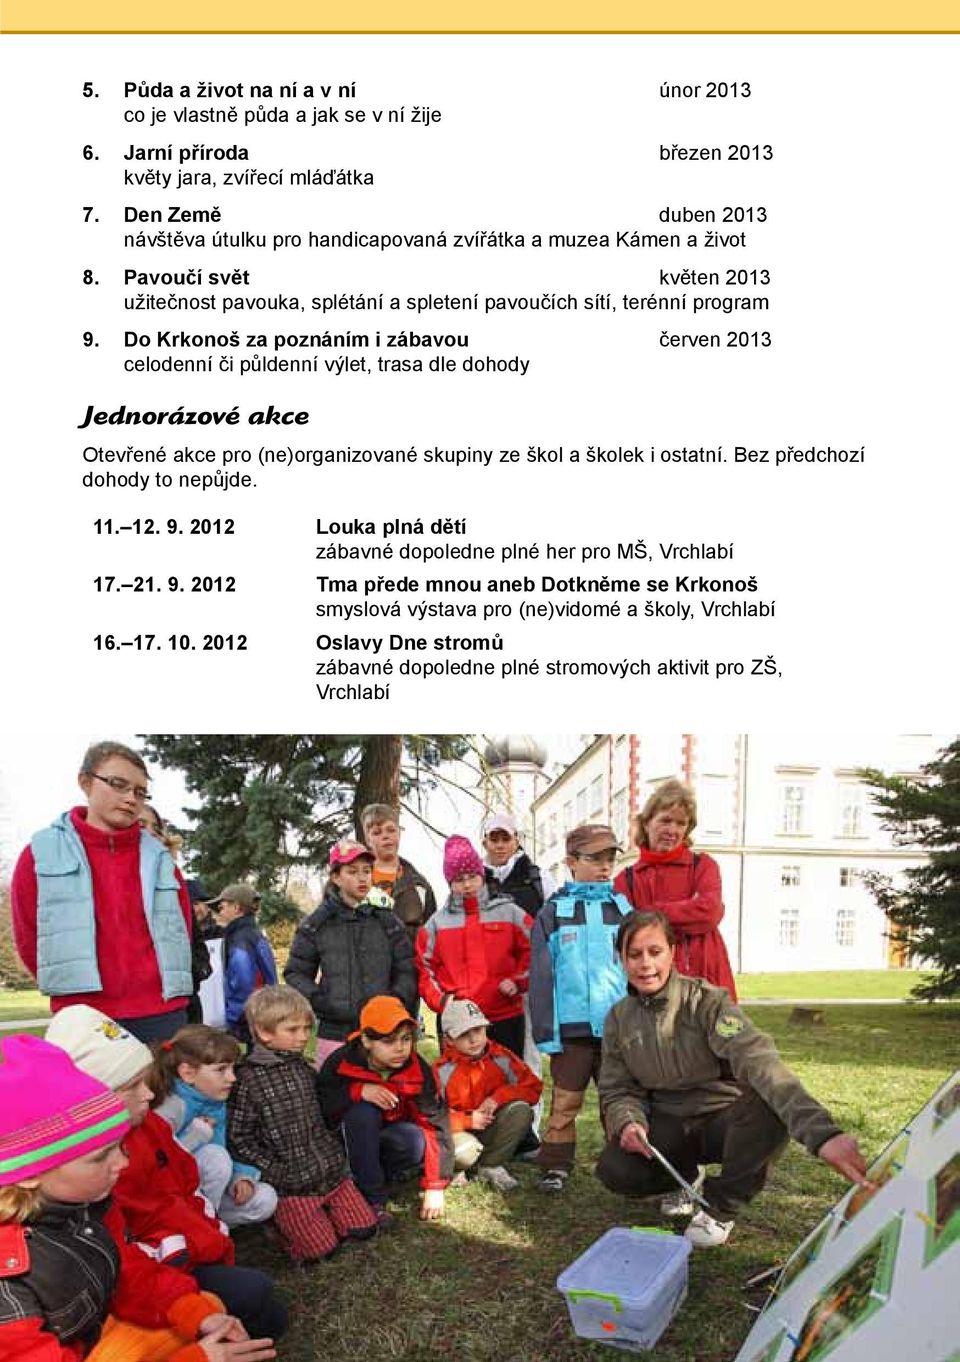 Do Krkonoš za poznáním i zábavou červen 2013 celodenní či půldenní výlet, trasa dle dohody Jednorázové akce Otevřené akce pro (ne)organizované skupiny ze škol a školek i ostatní.